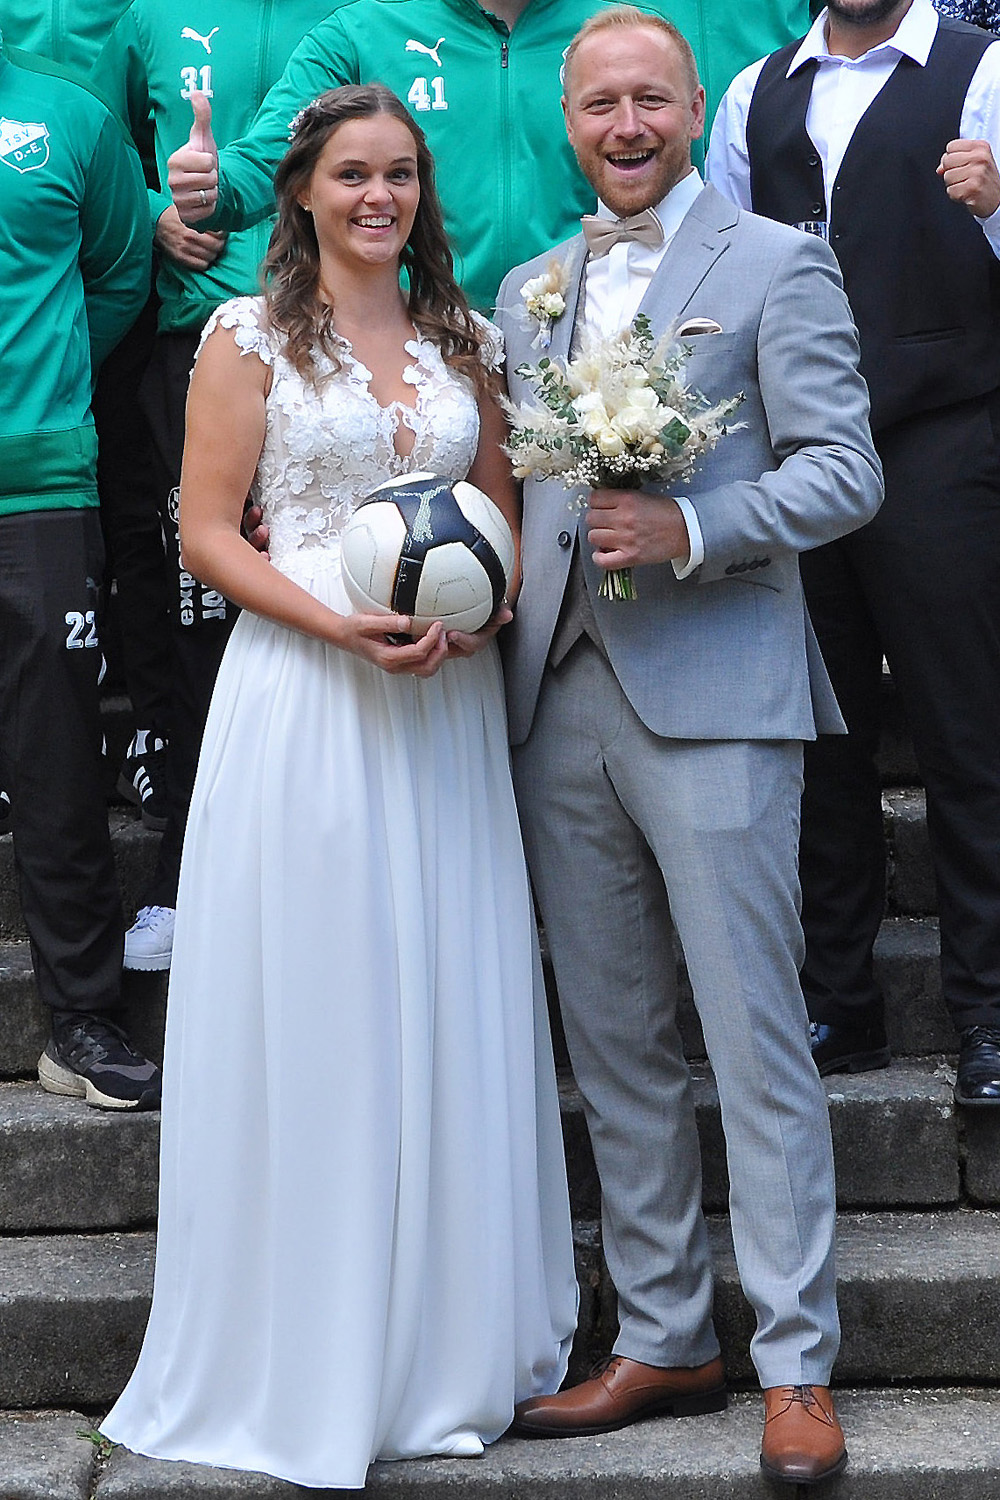 Der TSV Donndorf gratuliert Tanja und Milovan herzlich zur ihrer Hochzeit. - 25